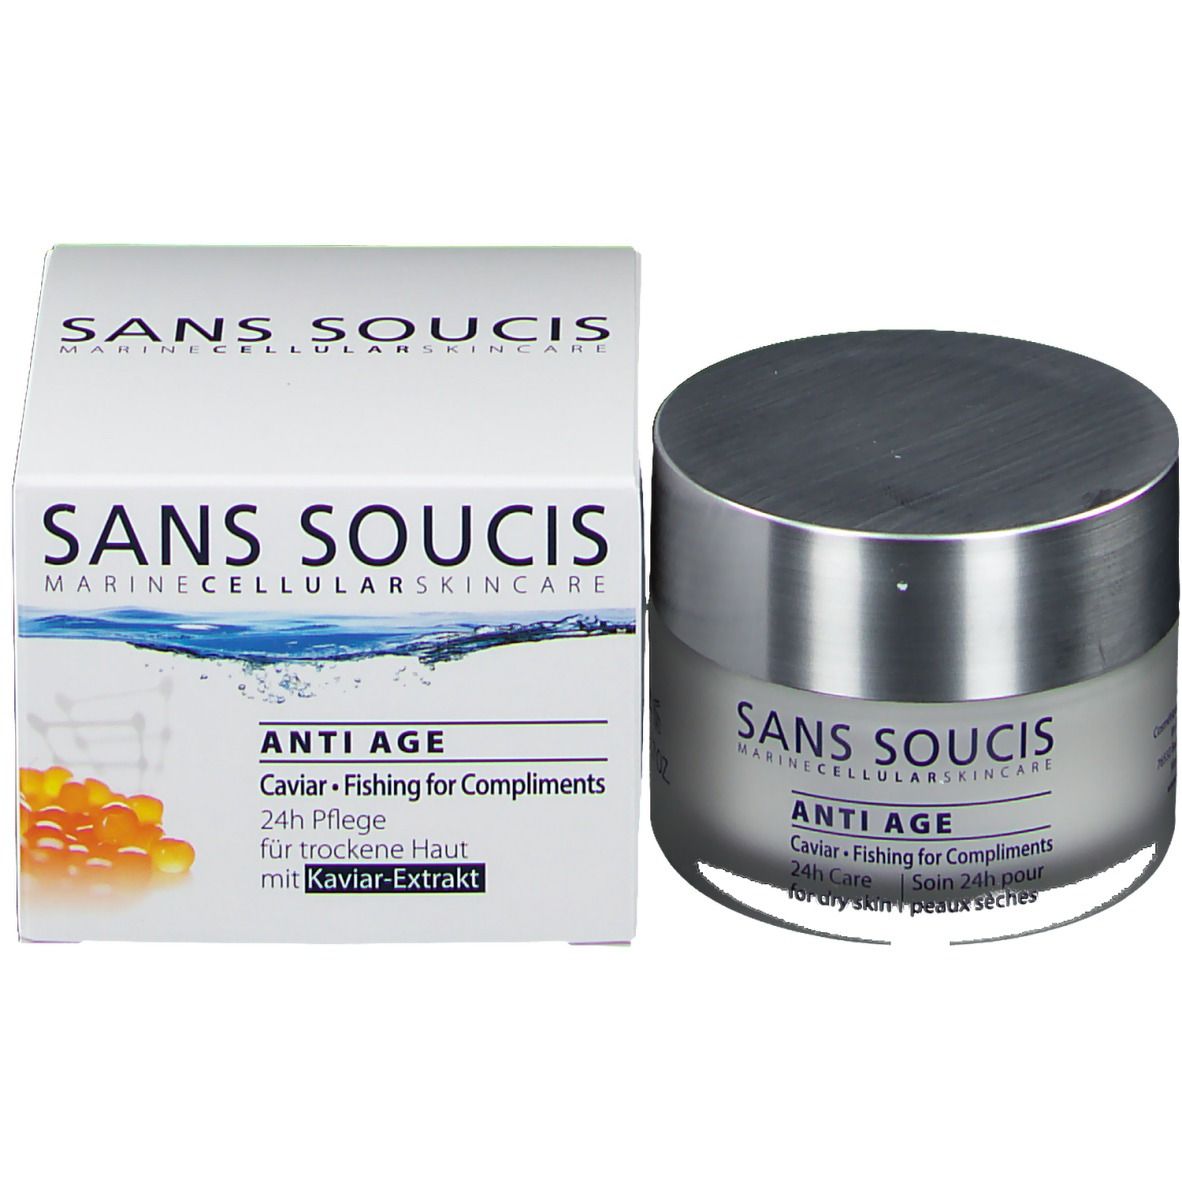 SANS SOUCIS 24h Pflege für trockene Haut